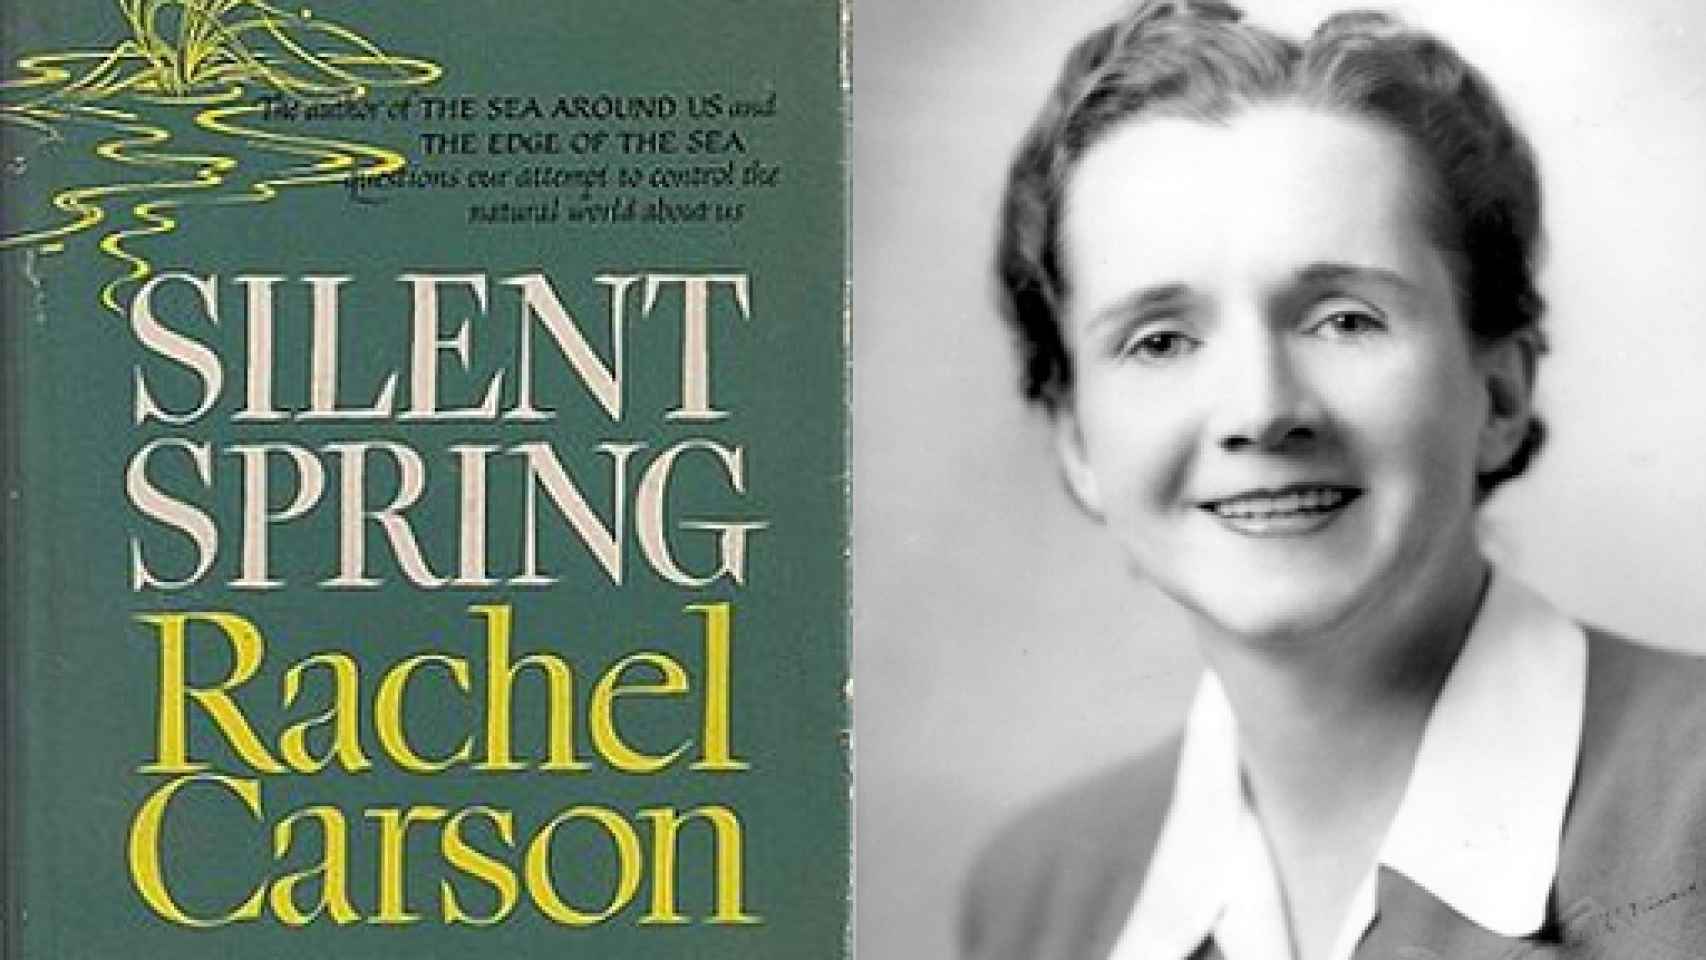 Image: El legado de Rachel Carson